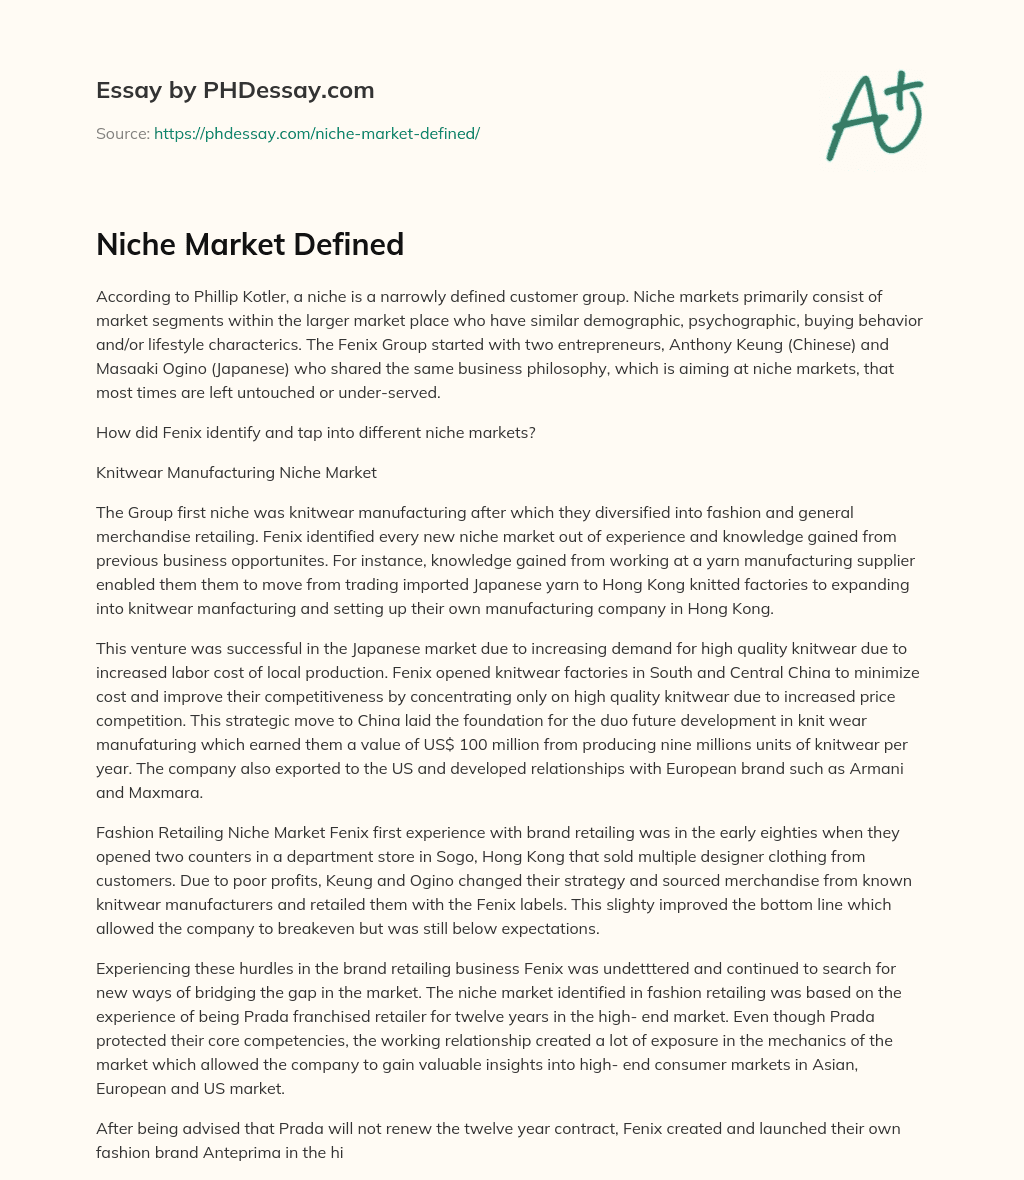 Niche Market Defined essay